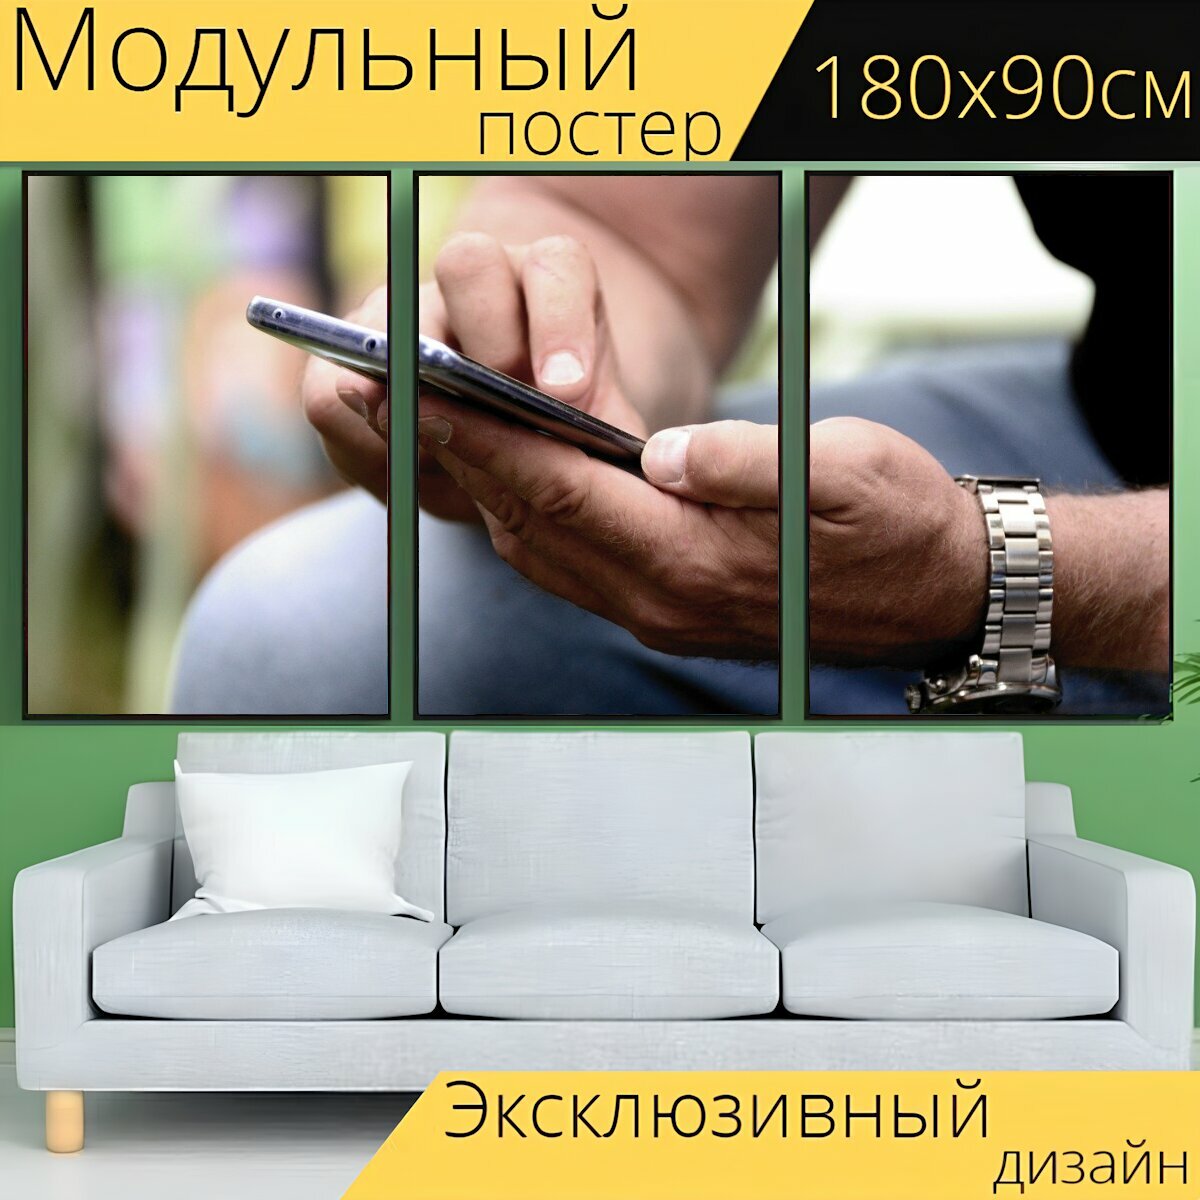 Модульный постер "Руки, мобильный, смартфон" 180 x 90 см. для интерьера